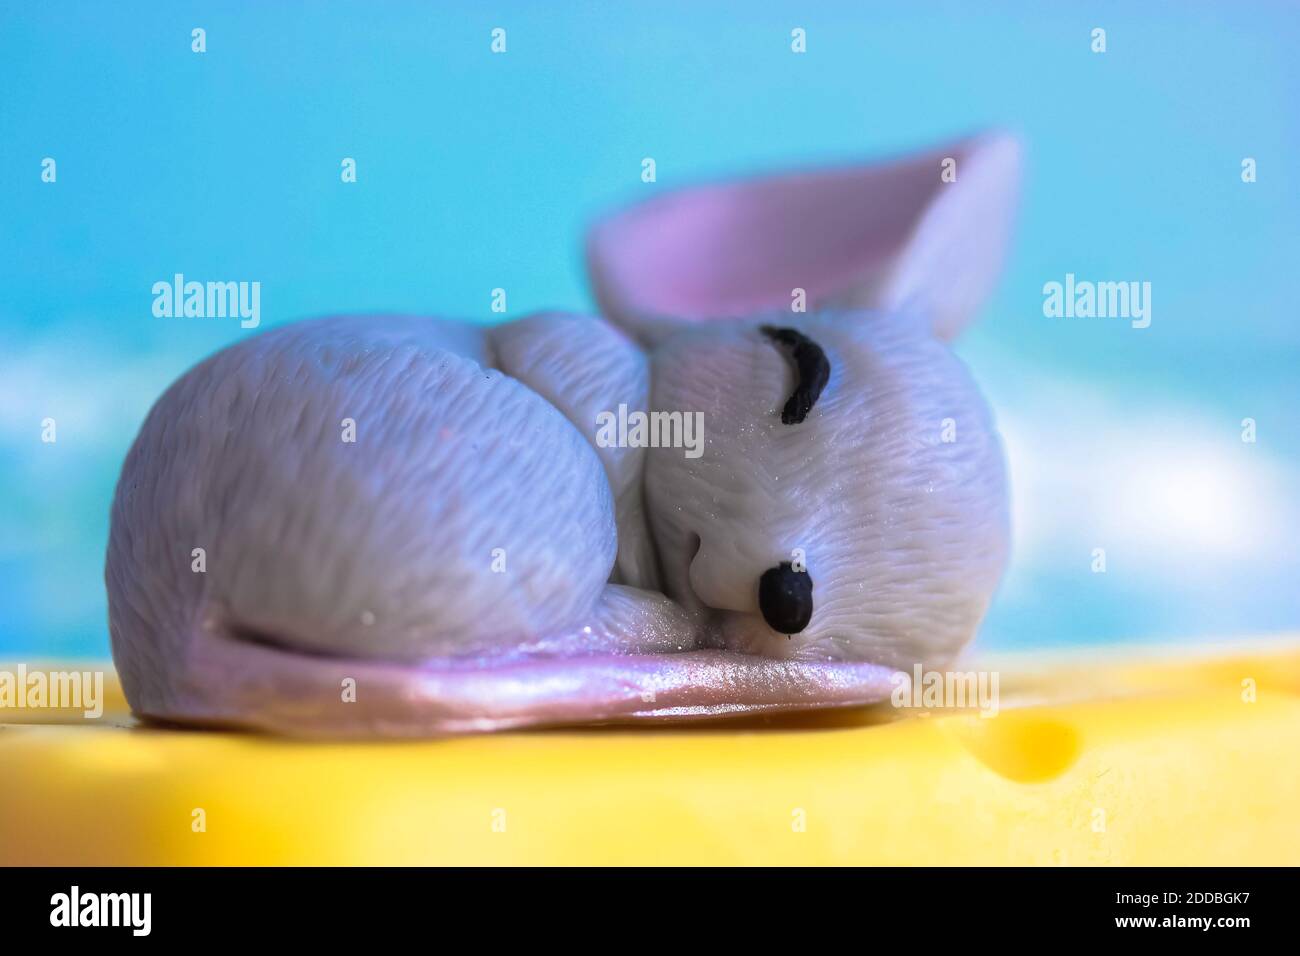 La souris grise dort doucement sur un morceau de fromage cheddar jaune, fond bleu Banque D'Images